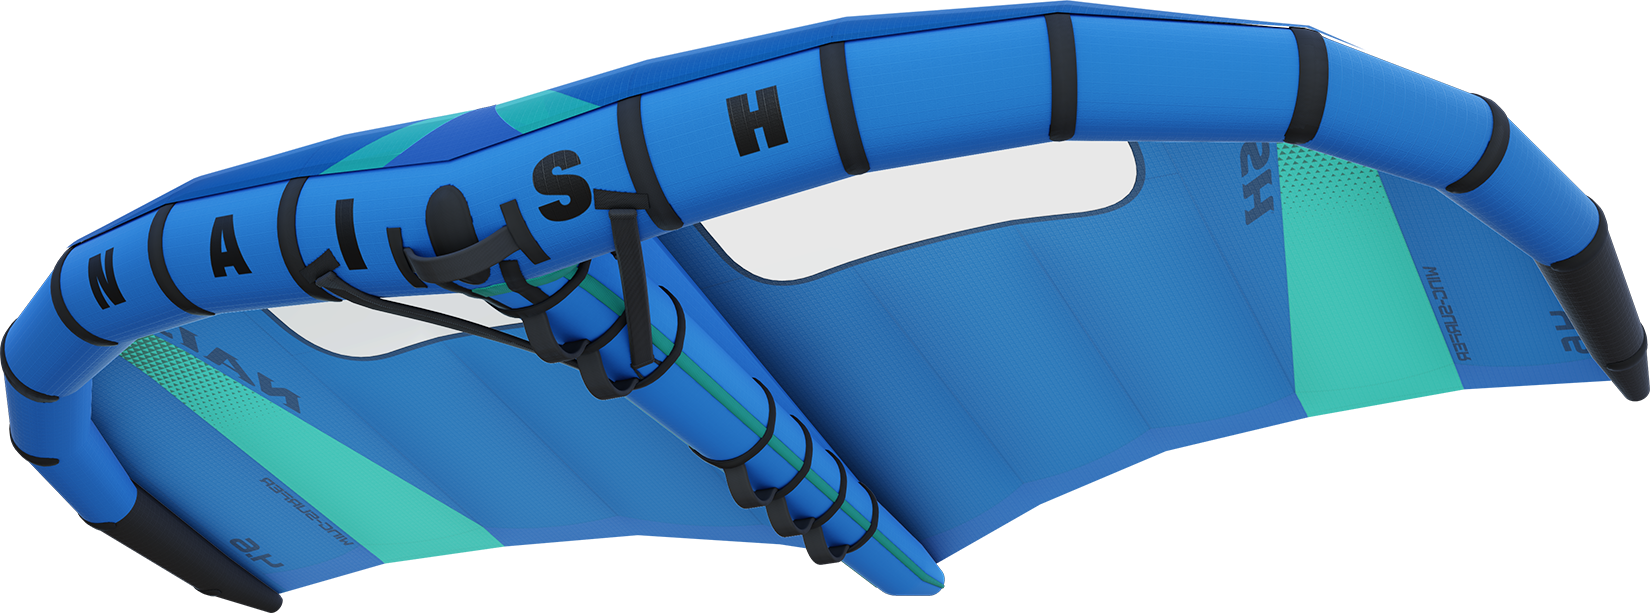 Naish S26 Wing-Surfer Wing